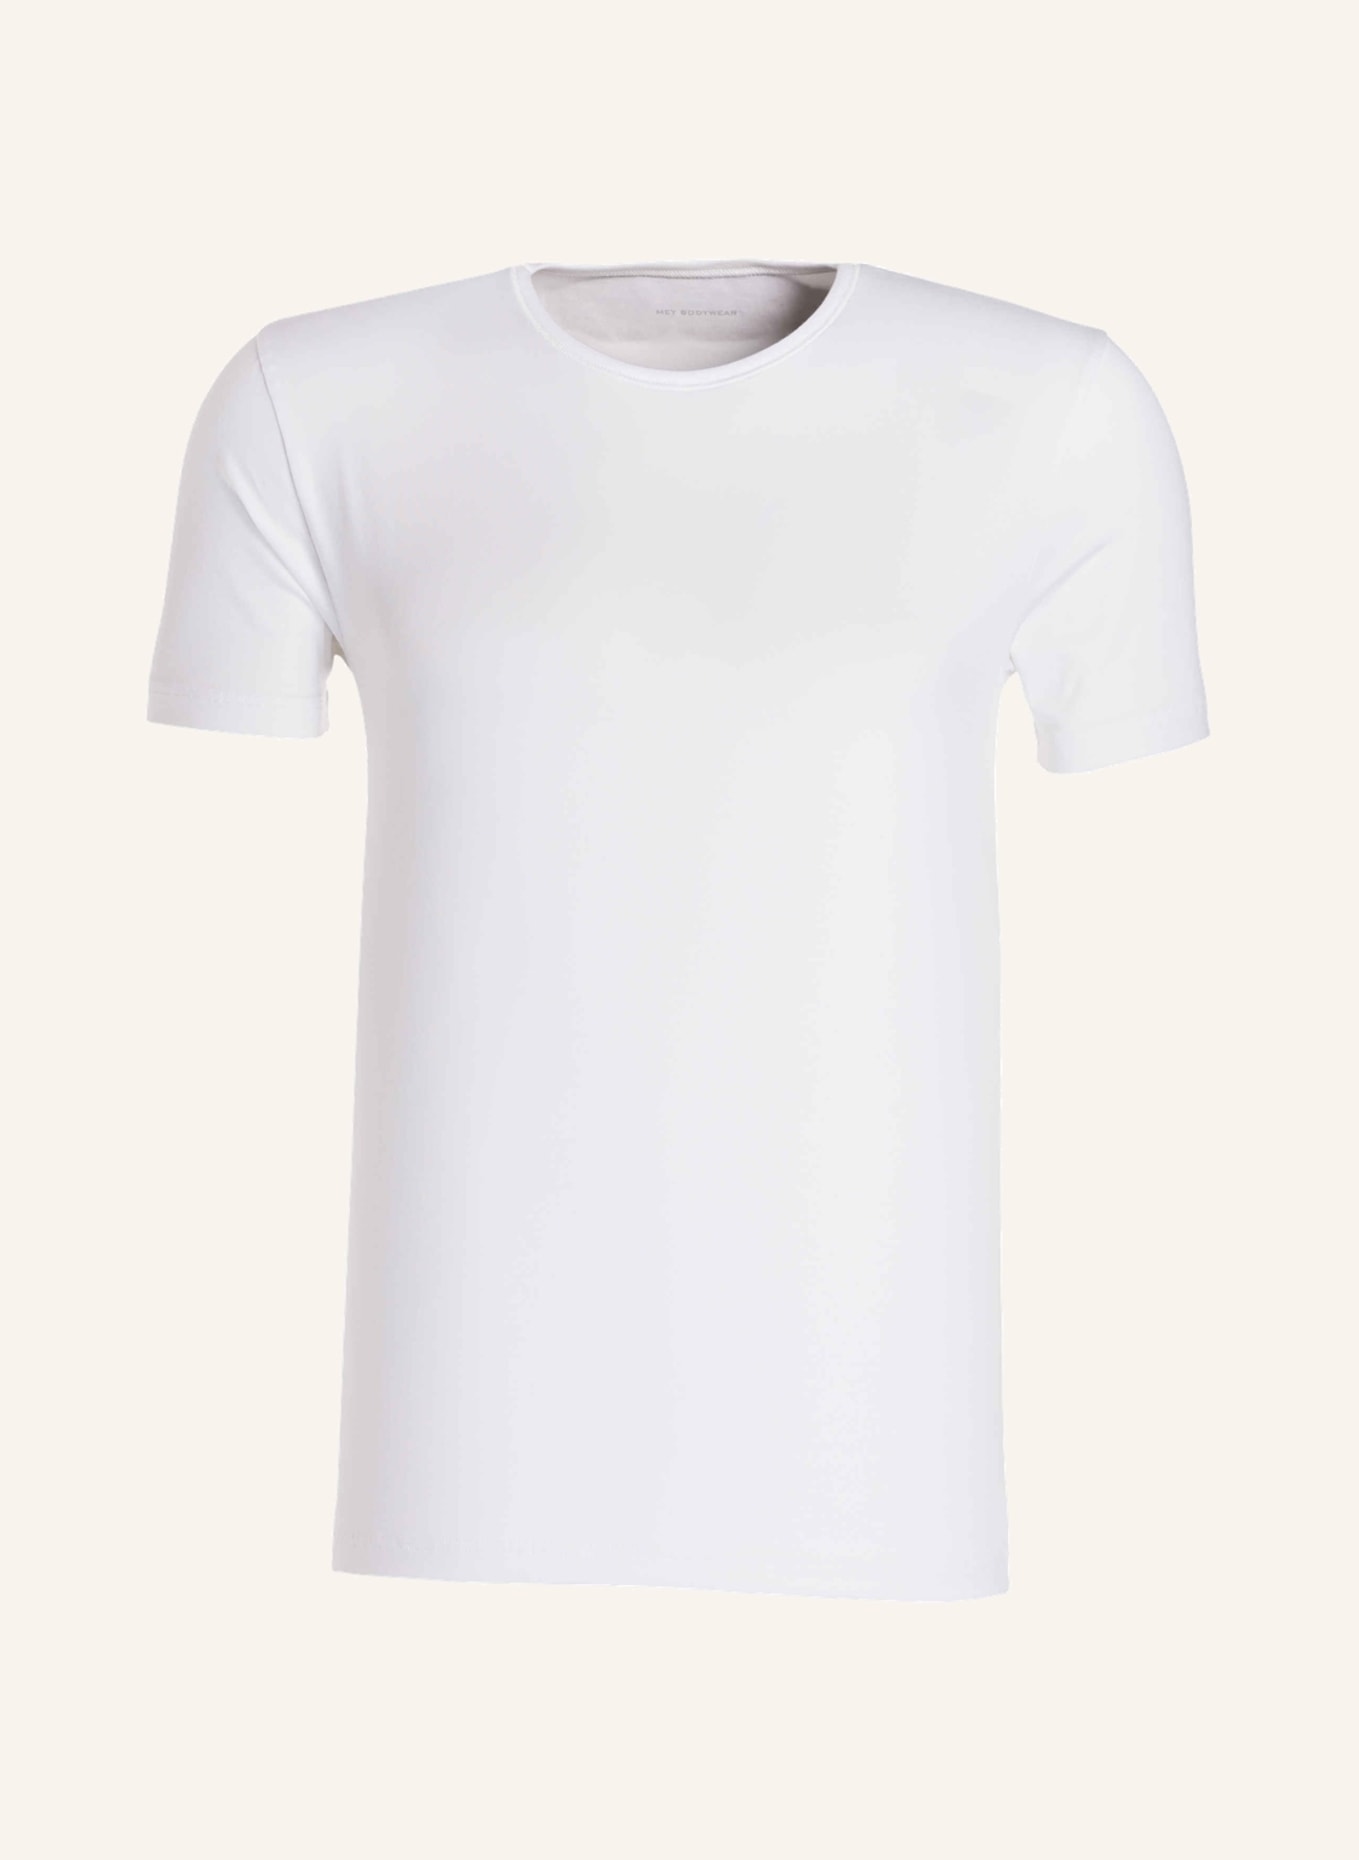 mey Pajama shirt series DRY COTTON, Color: WHITE (Image 1)